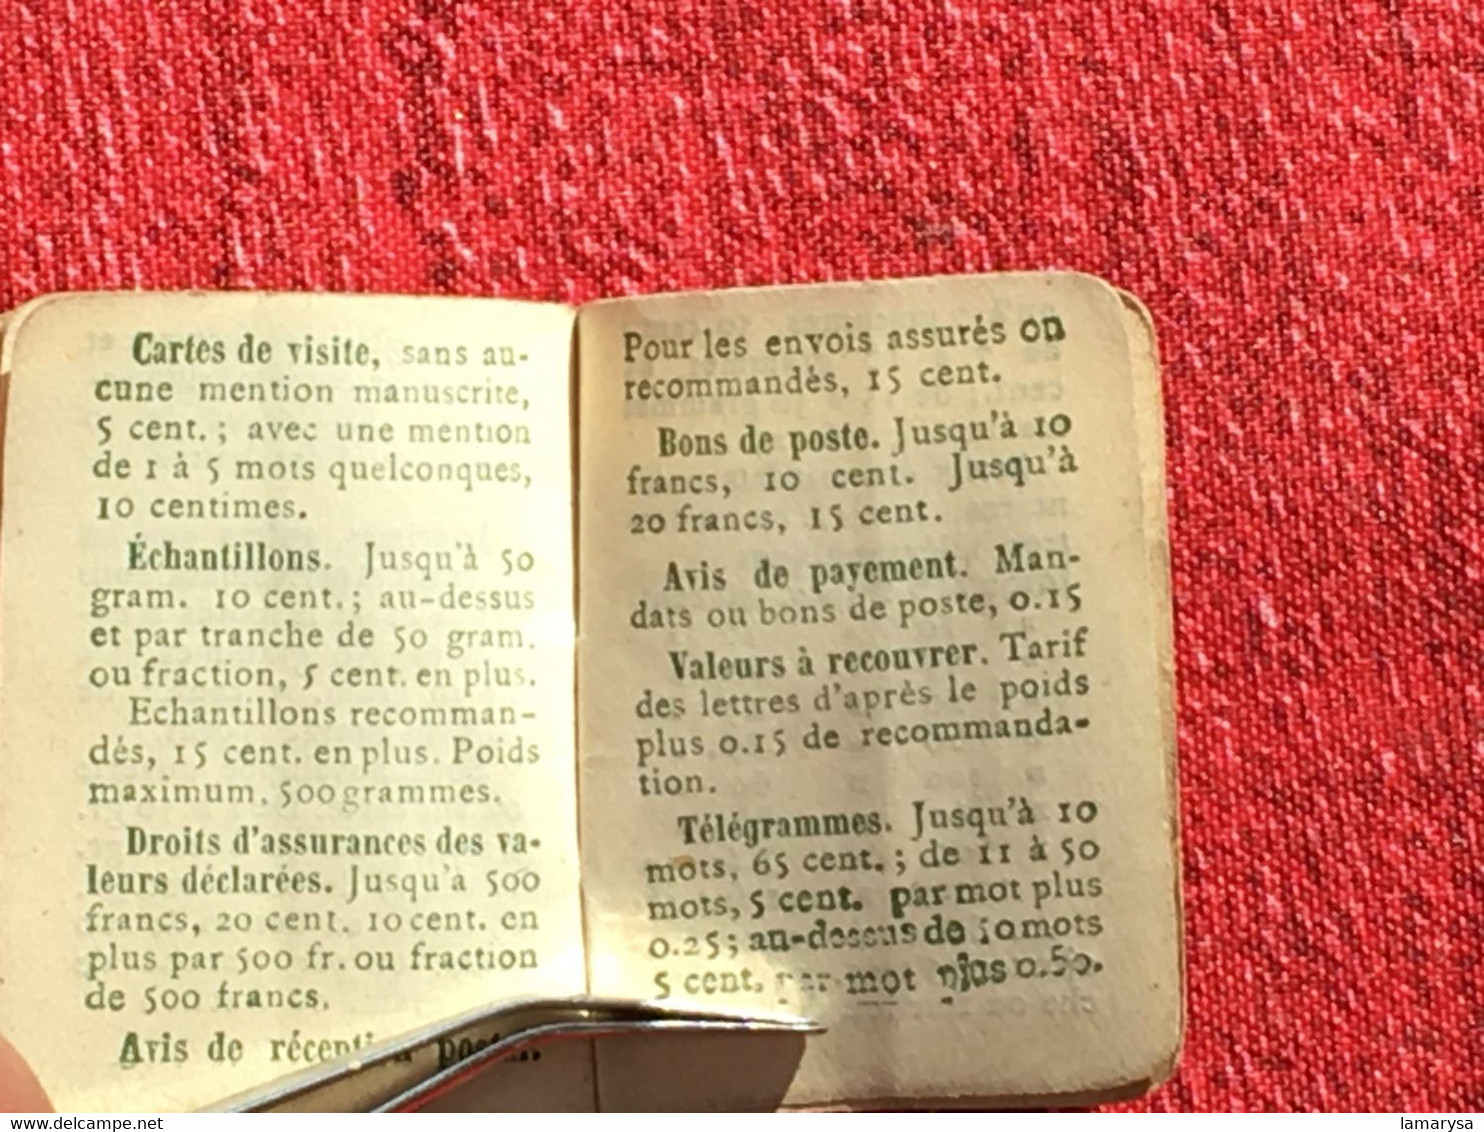 Almanach 1918 Calendrier-Petit format-Saisons-Fêtes-tarif postal-WW1-Publicitaire Coiffure-Chaussures Bernheim Paris